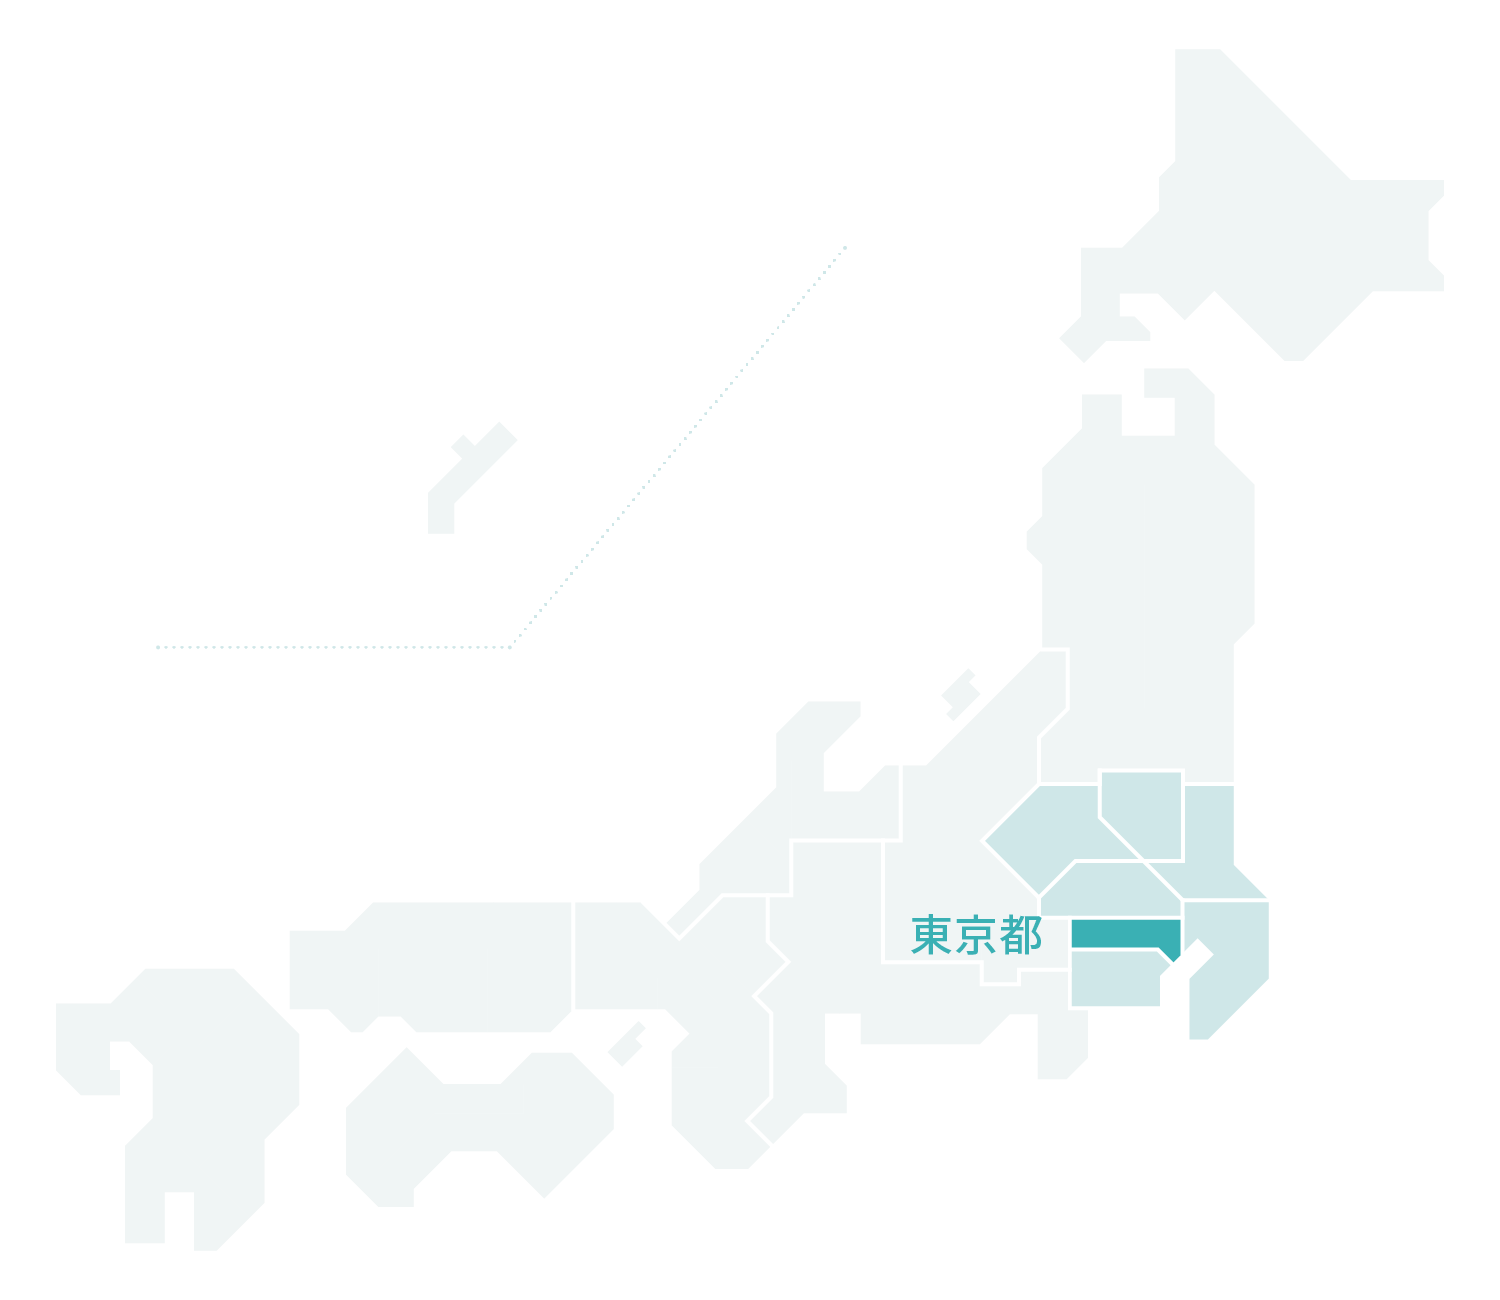 東京都マップ